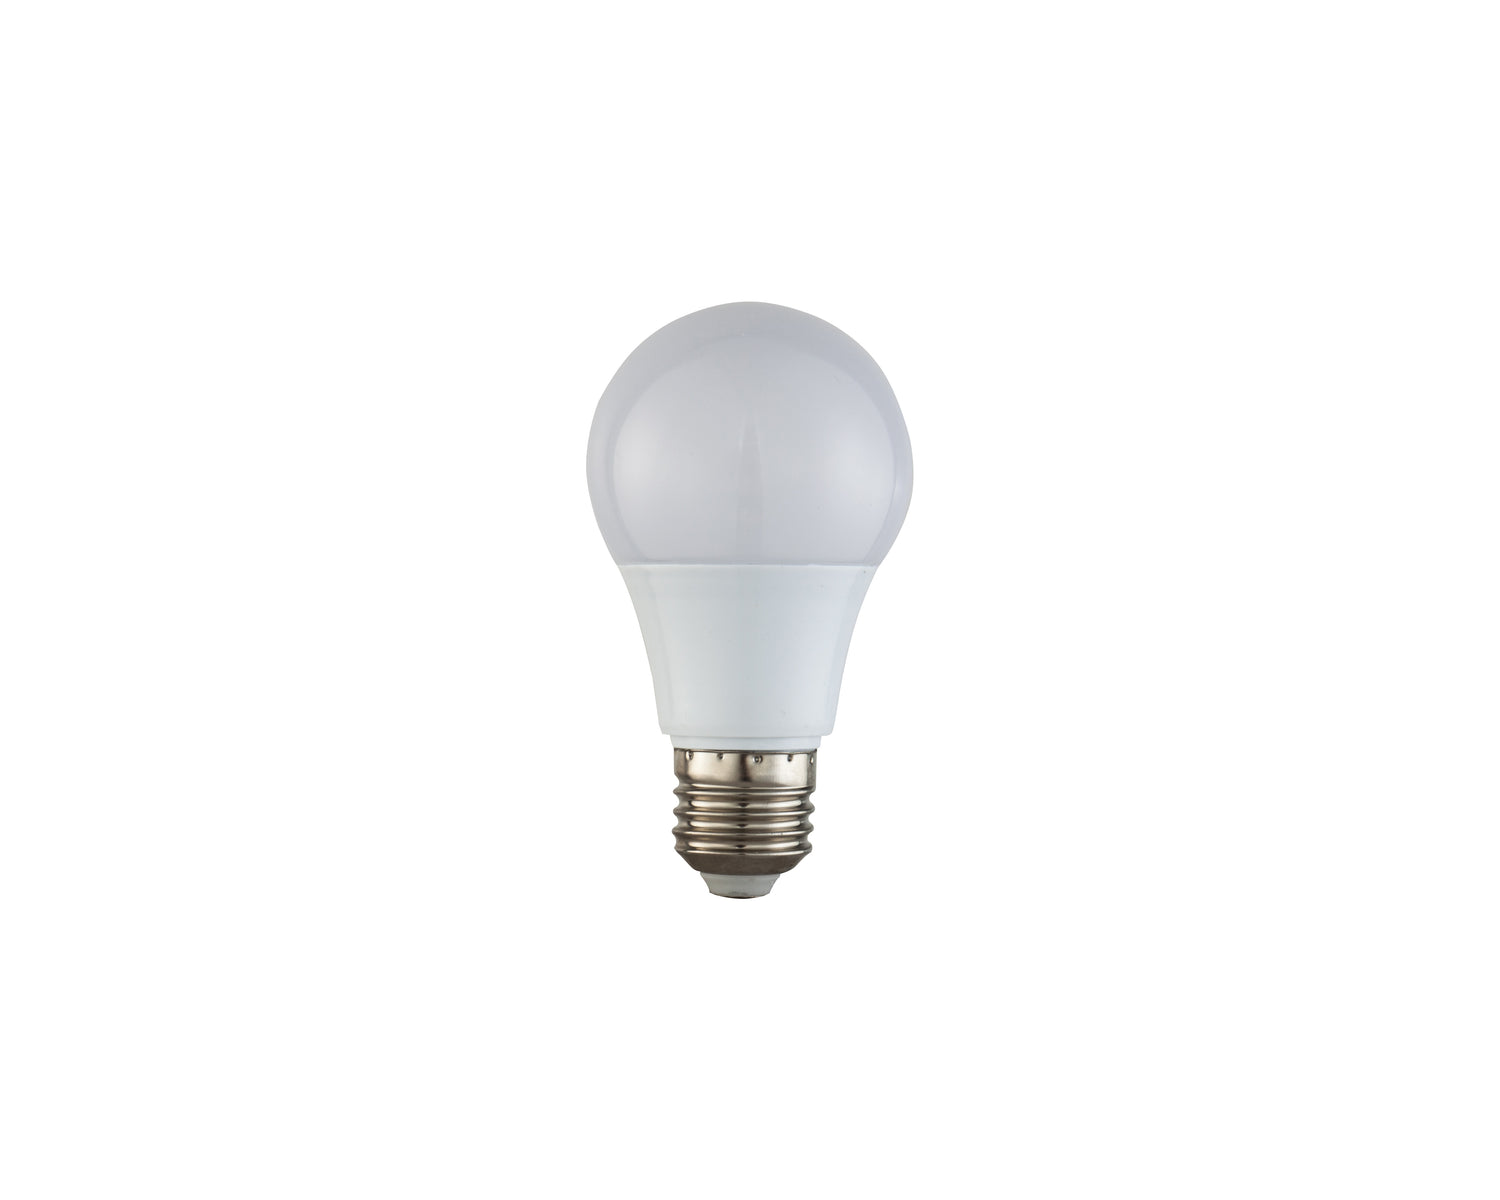  LiangAndEimil-Liang & Eimil E27 LED Global Bulb-Clear 61 